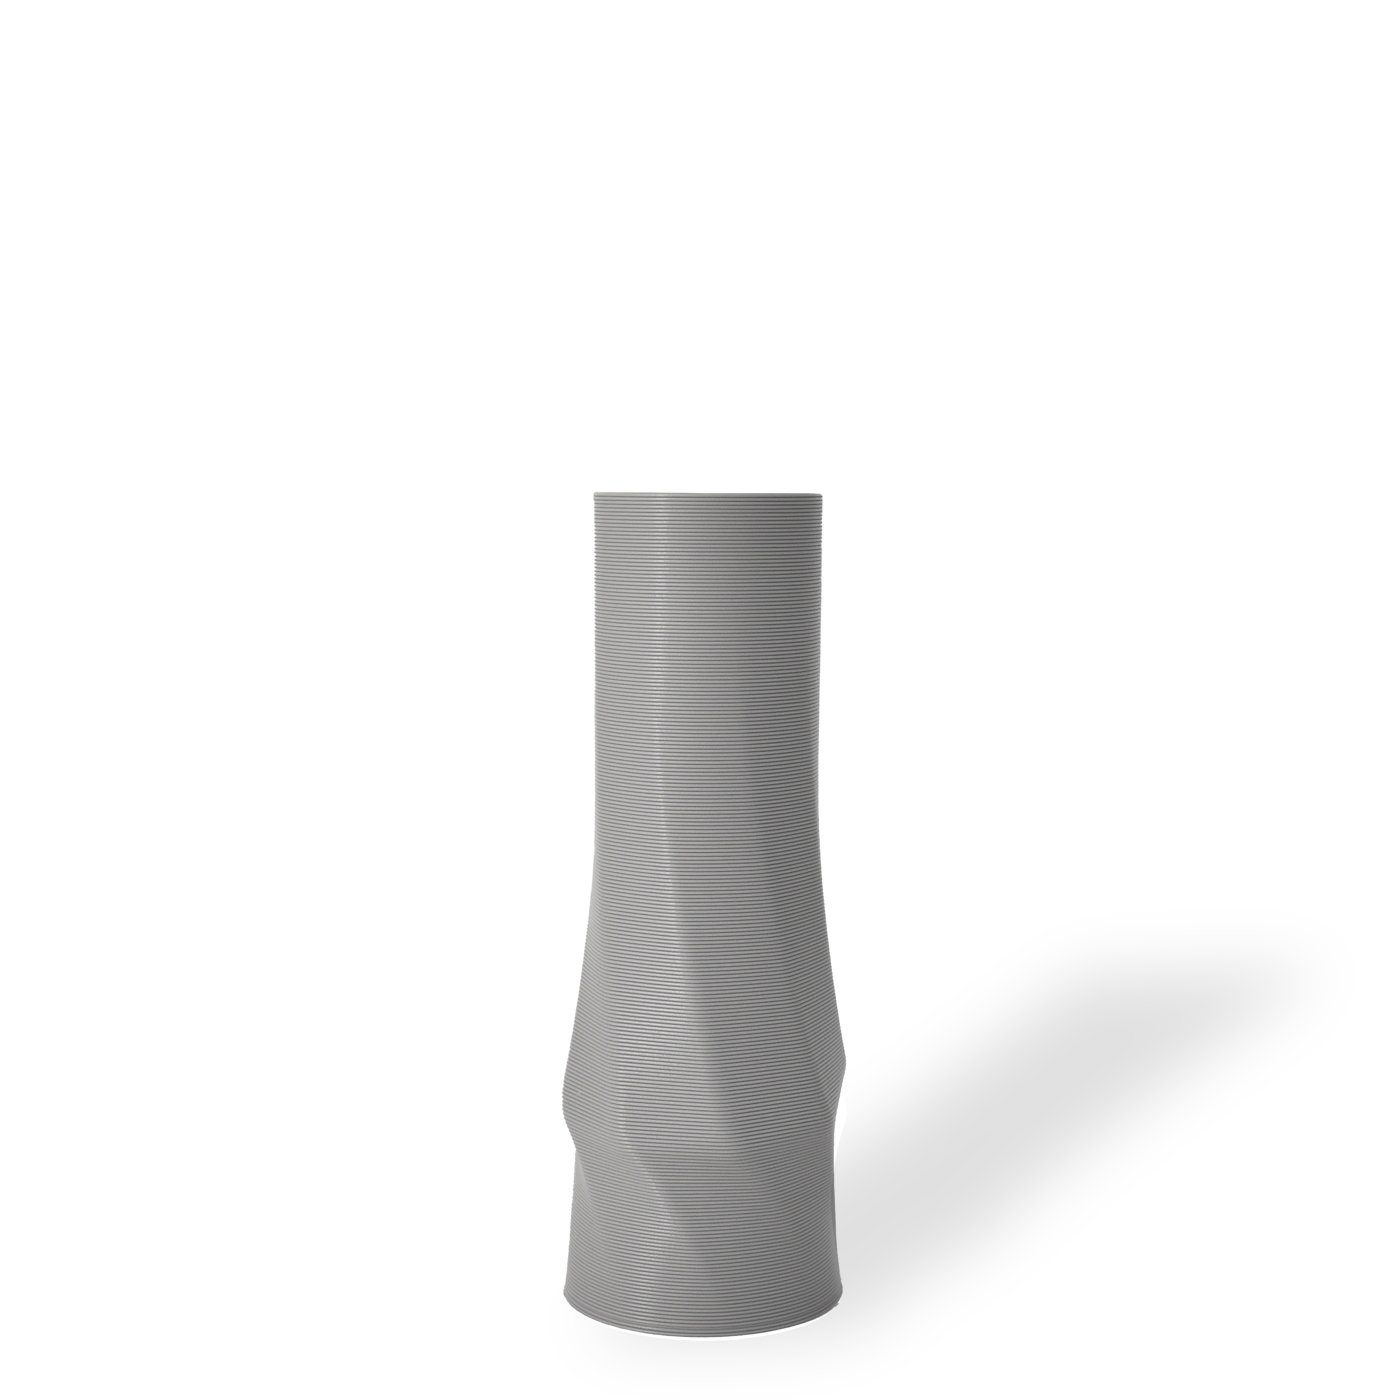 (basic), circle 1 Farben, Leichte 3D-Druck Vasen, viele Hellgrau - 100% vase Vase), Decorations (Rillung) innerhalb (Einzelmodell, the Dekovase Wasserdicht; Materials - des Shapes Struktur 3D